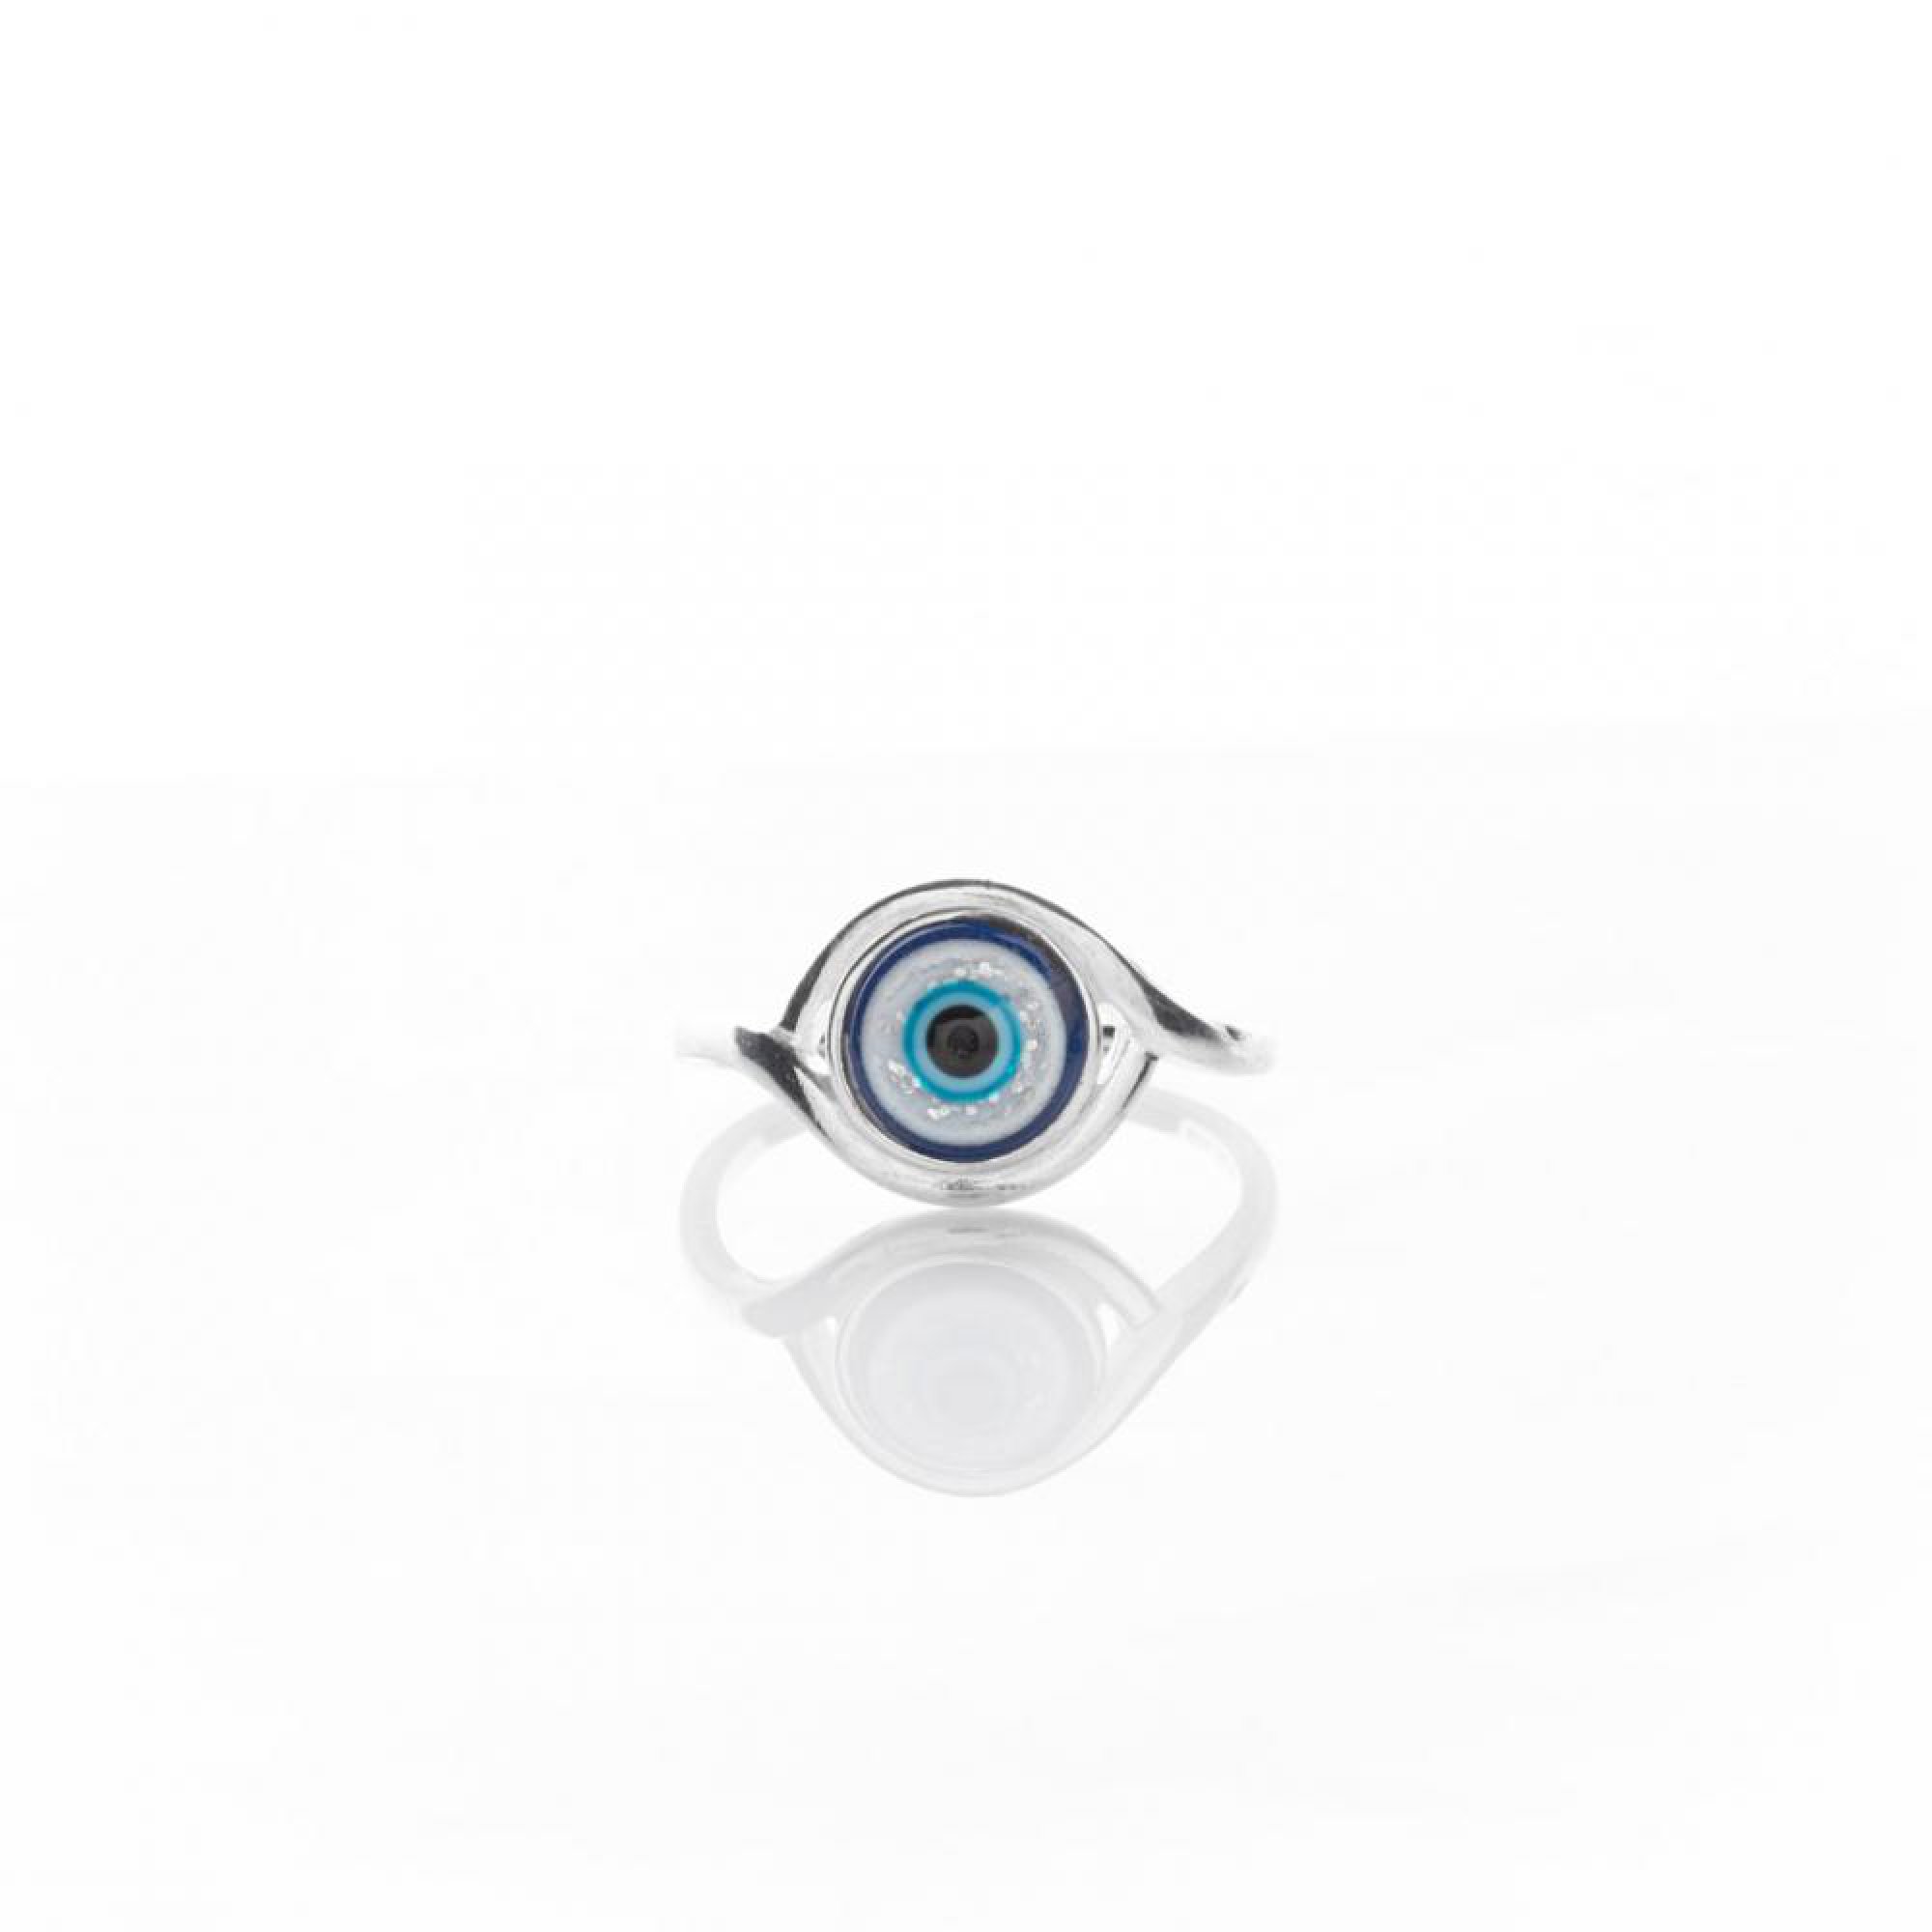 Eye ring